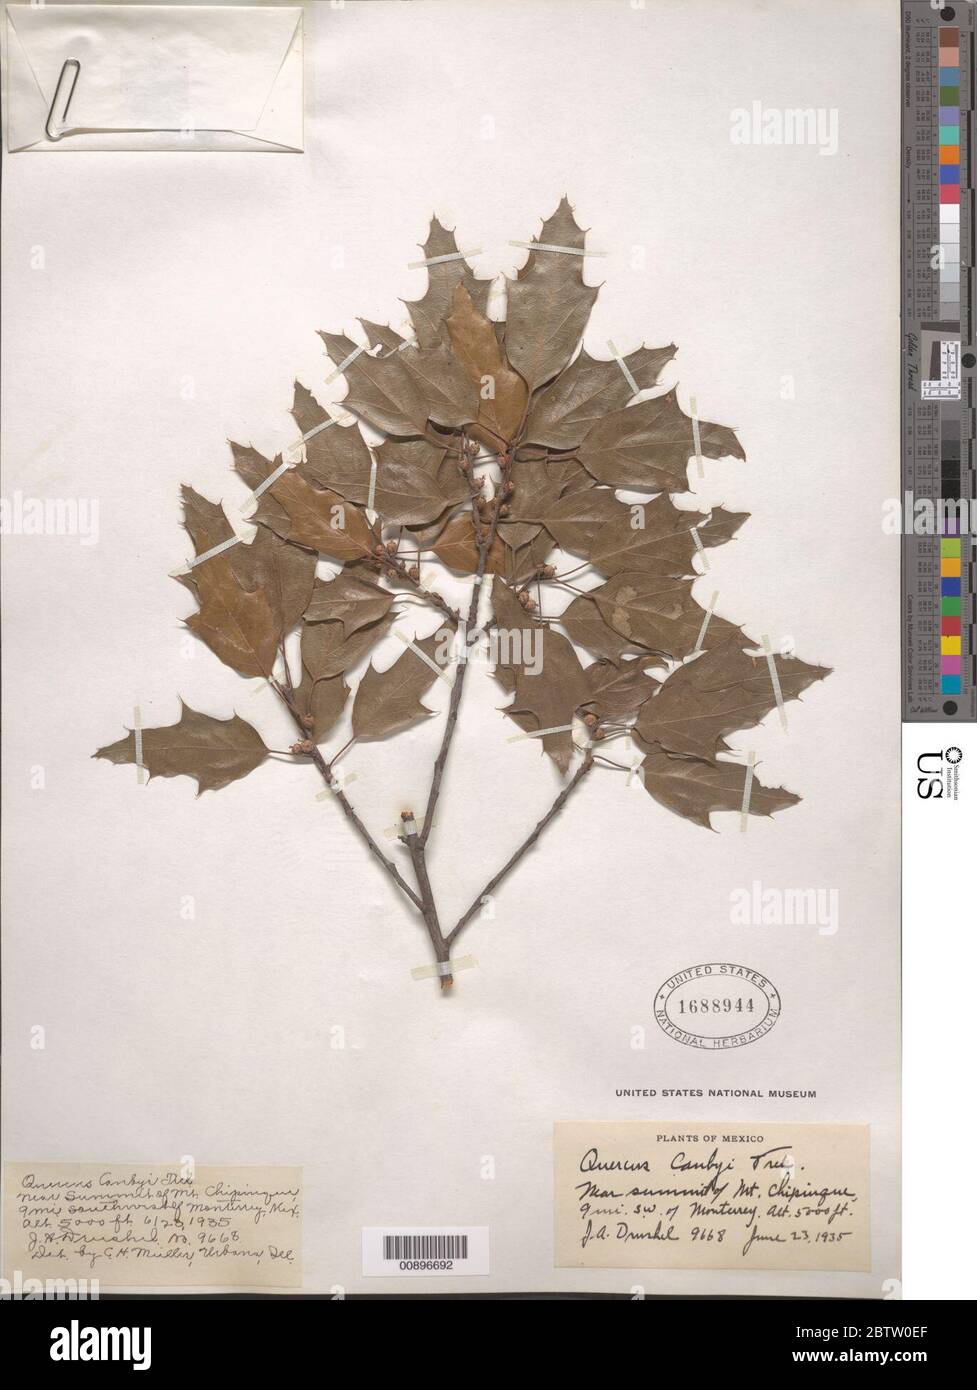 Quercus canbyi Trel. Stock Photo